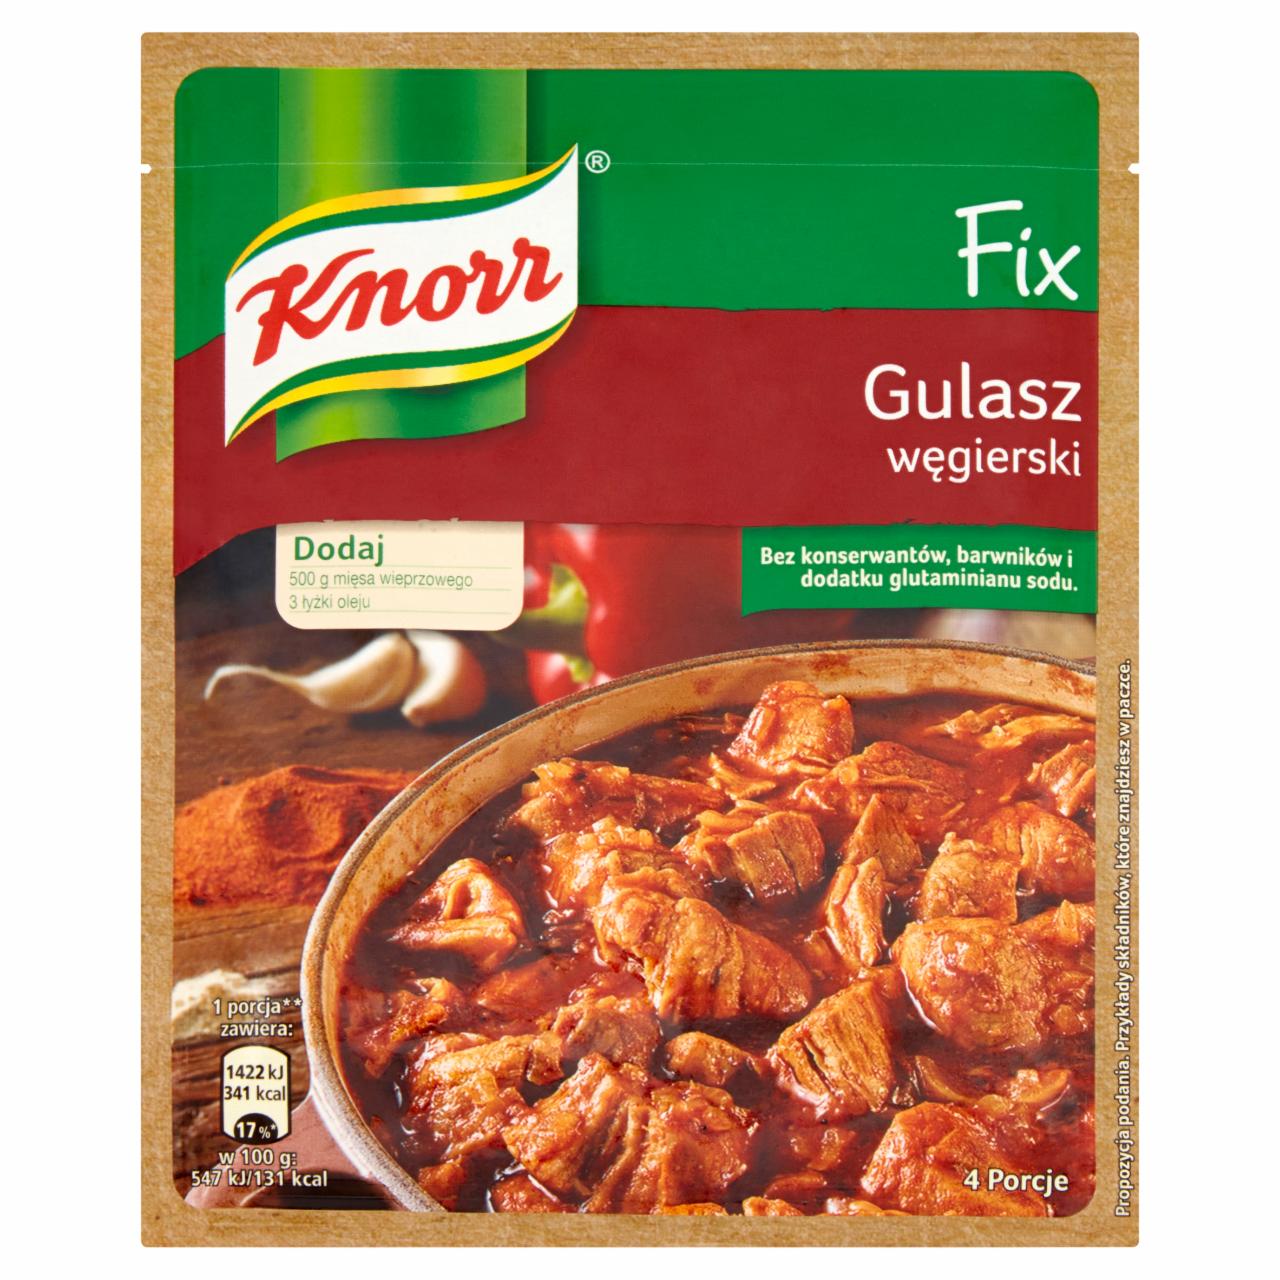 Zdjęcia - Knorr Fix gulasz węgierski 46 g